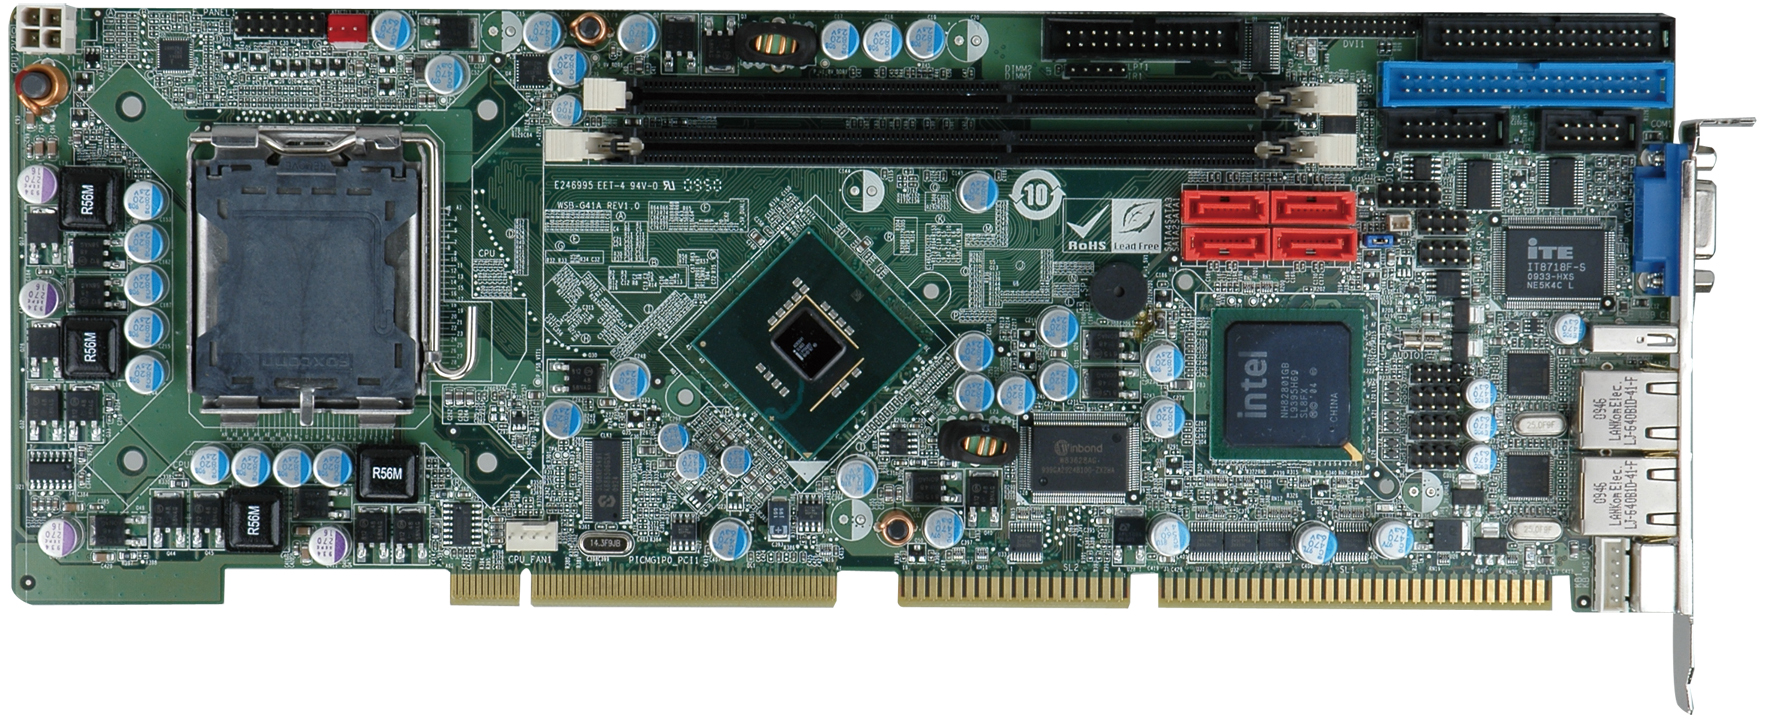 双英特尔口CPU卡 LRK-G41I2I